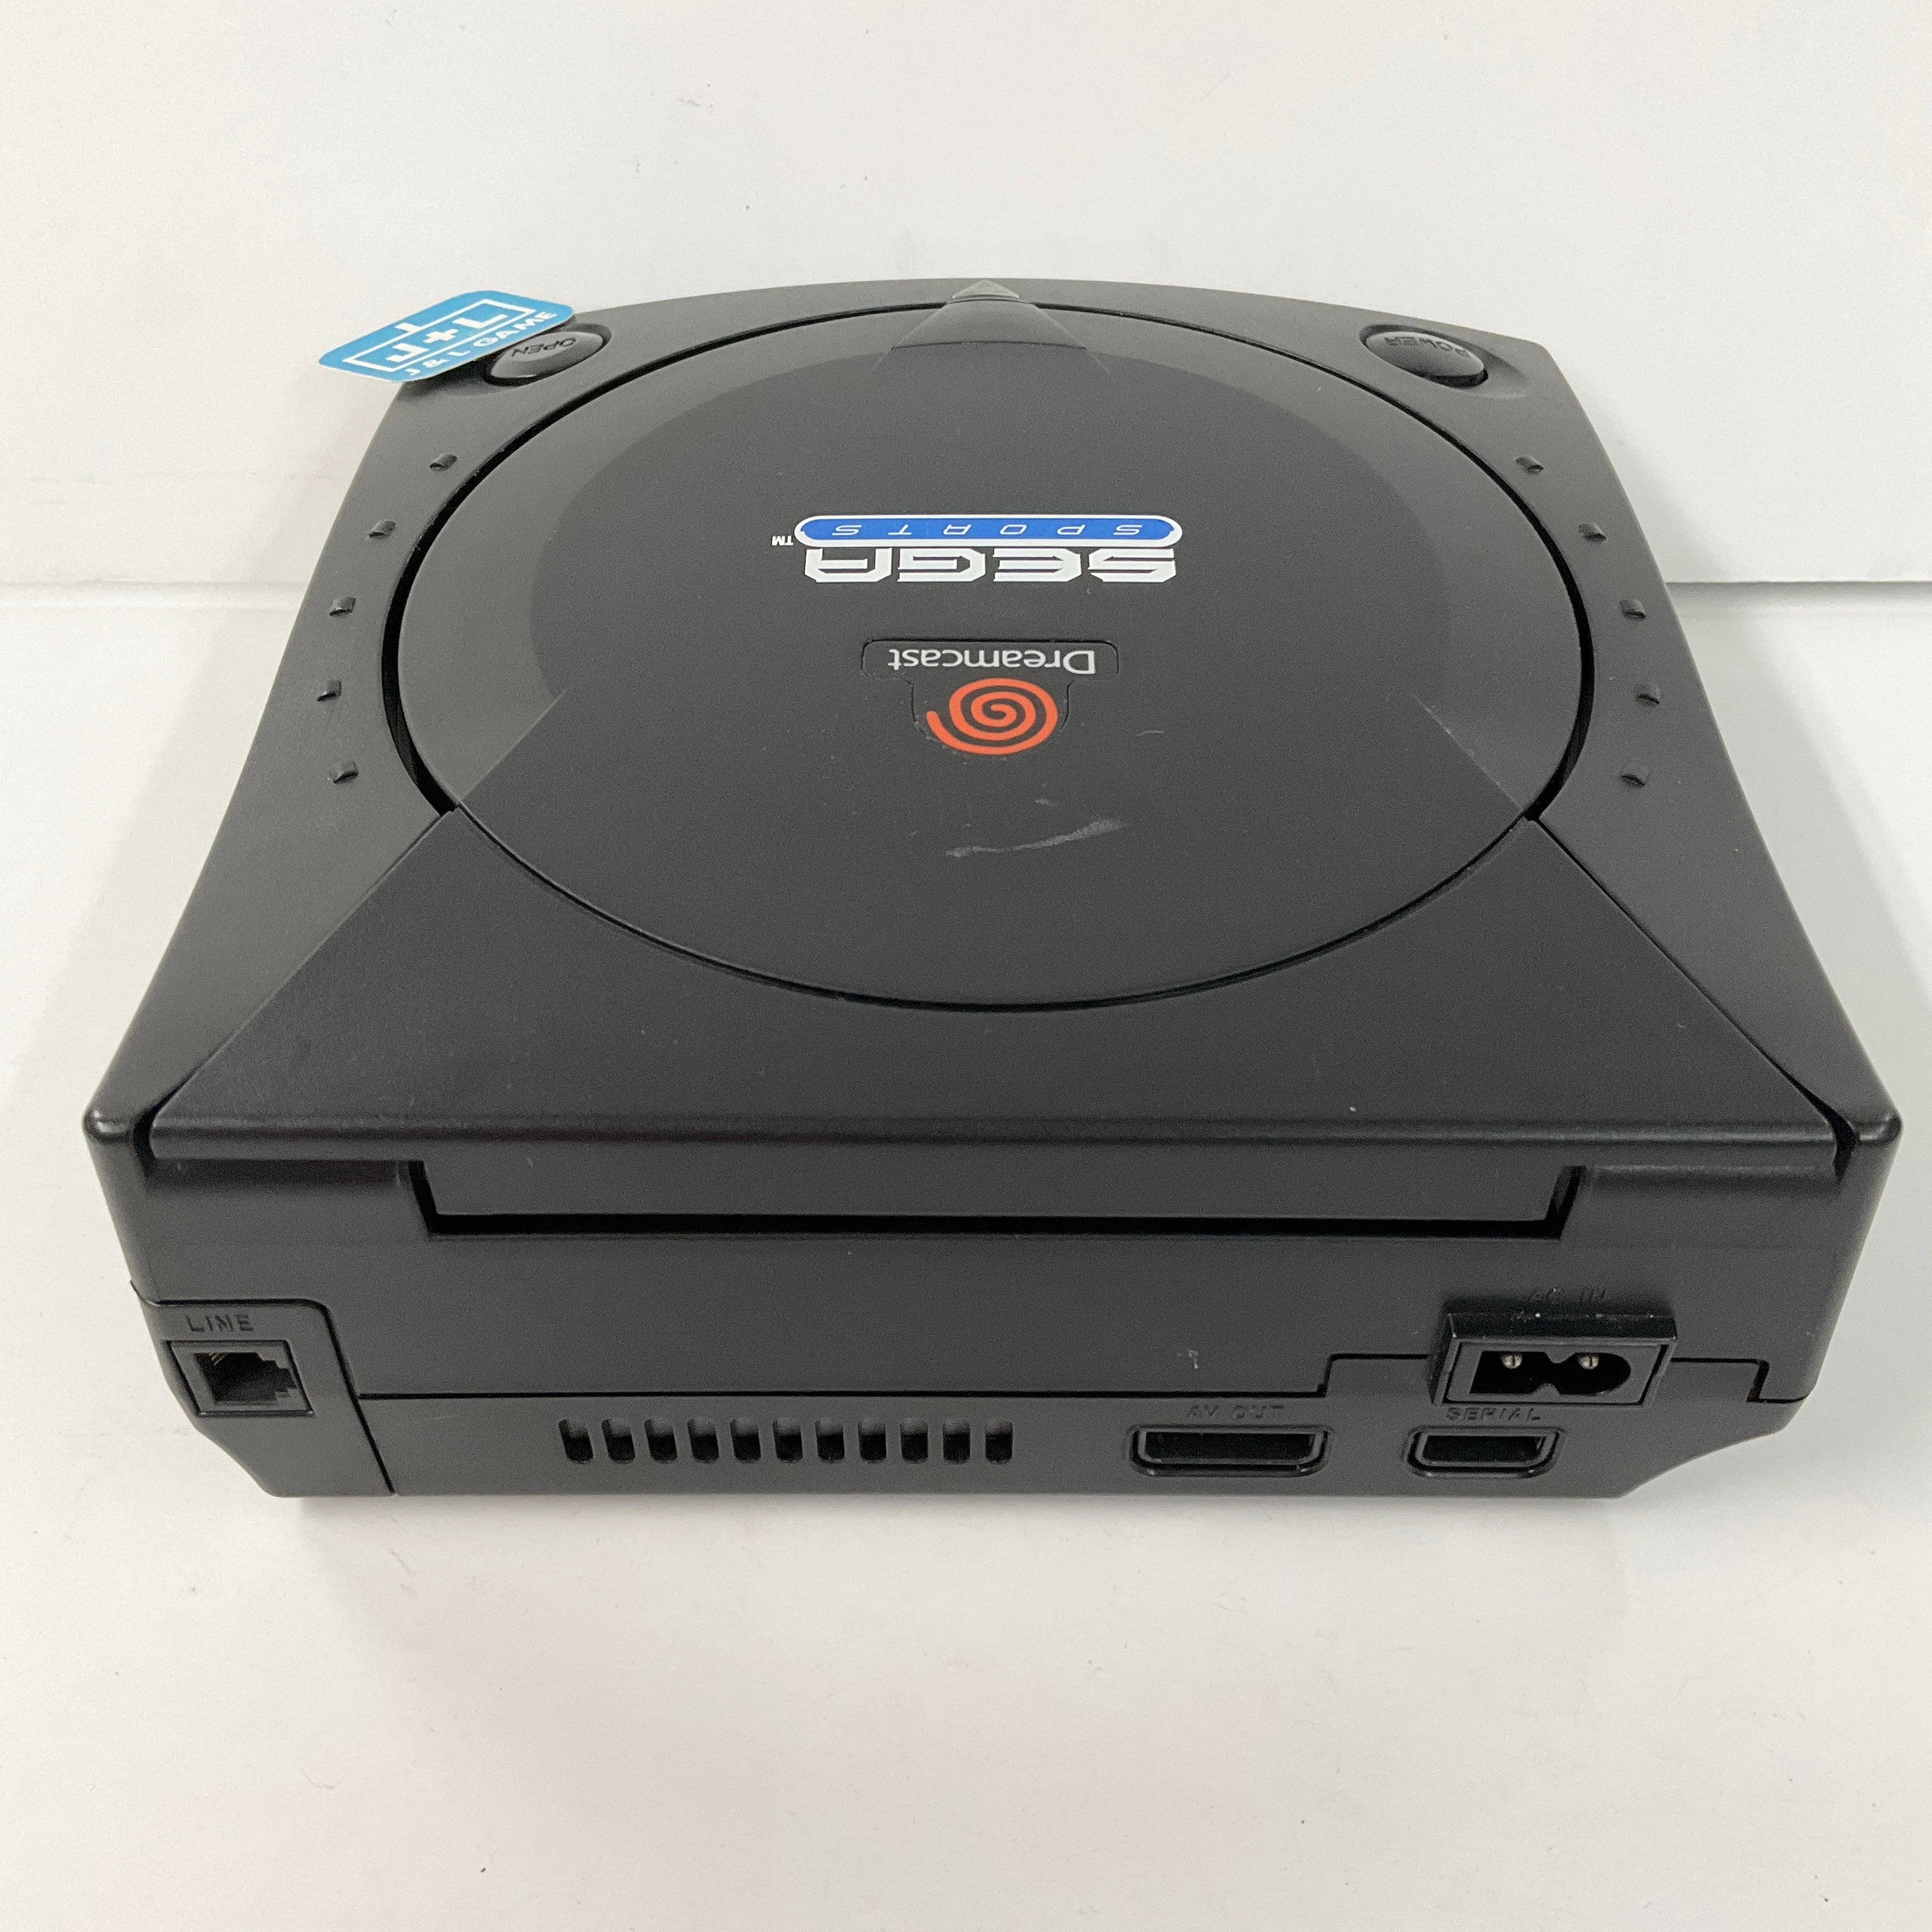 Sega Dreamcast Console Black Sega Sports Edition - (DC) Sega Dreamcast [Pre-Owned] Consoles SEGA   